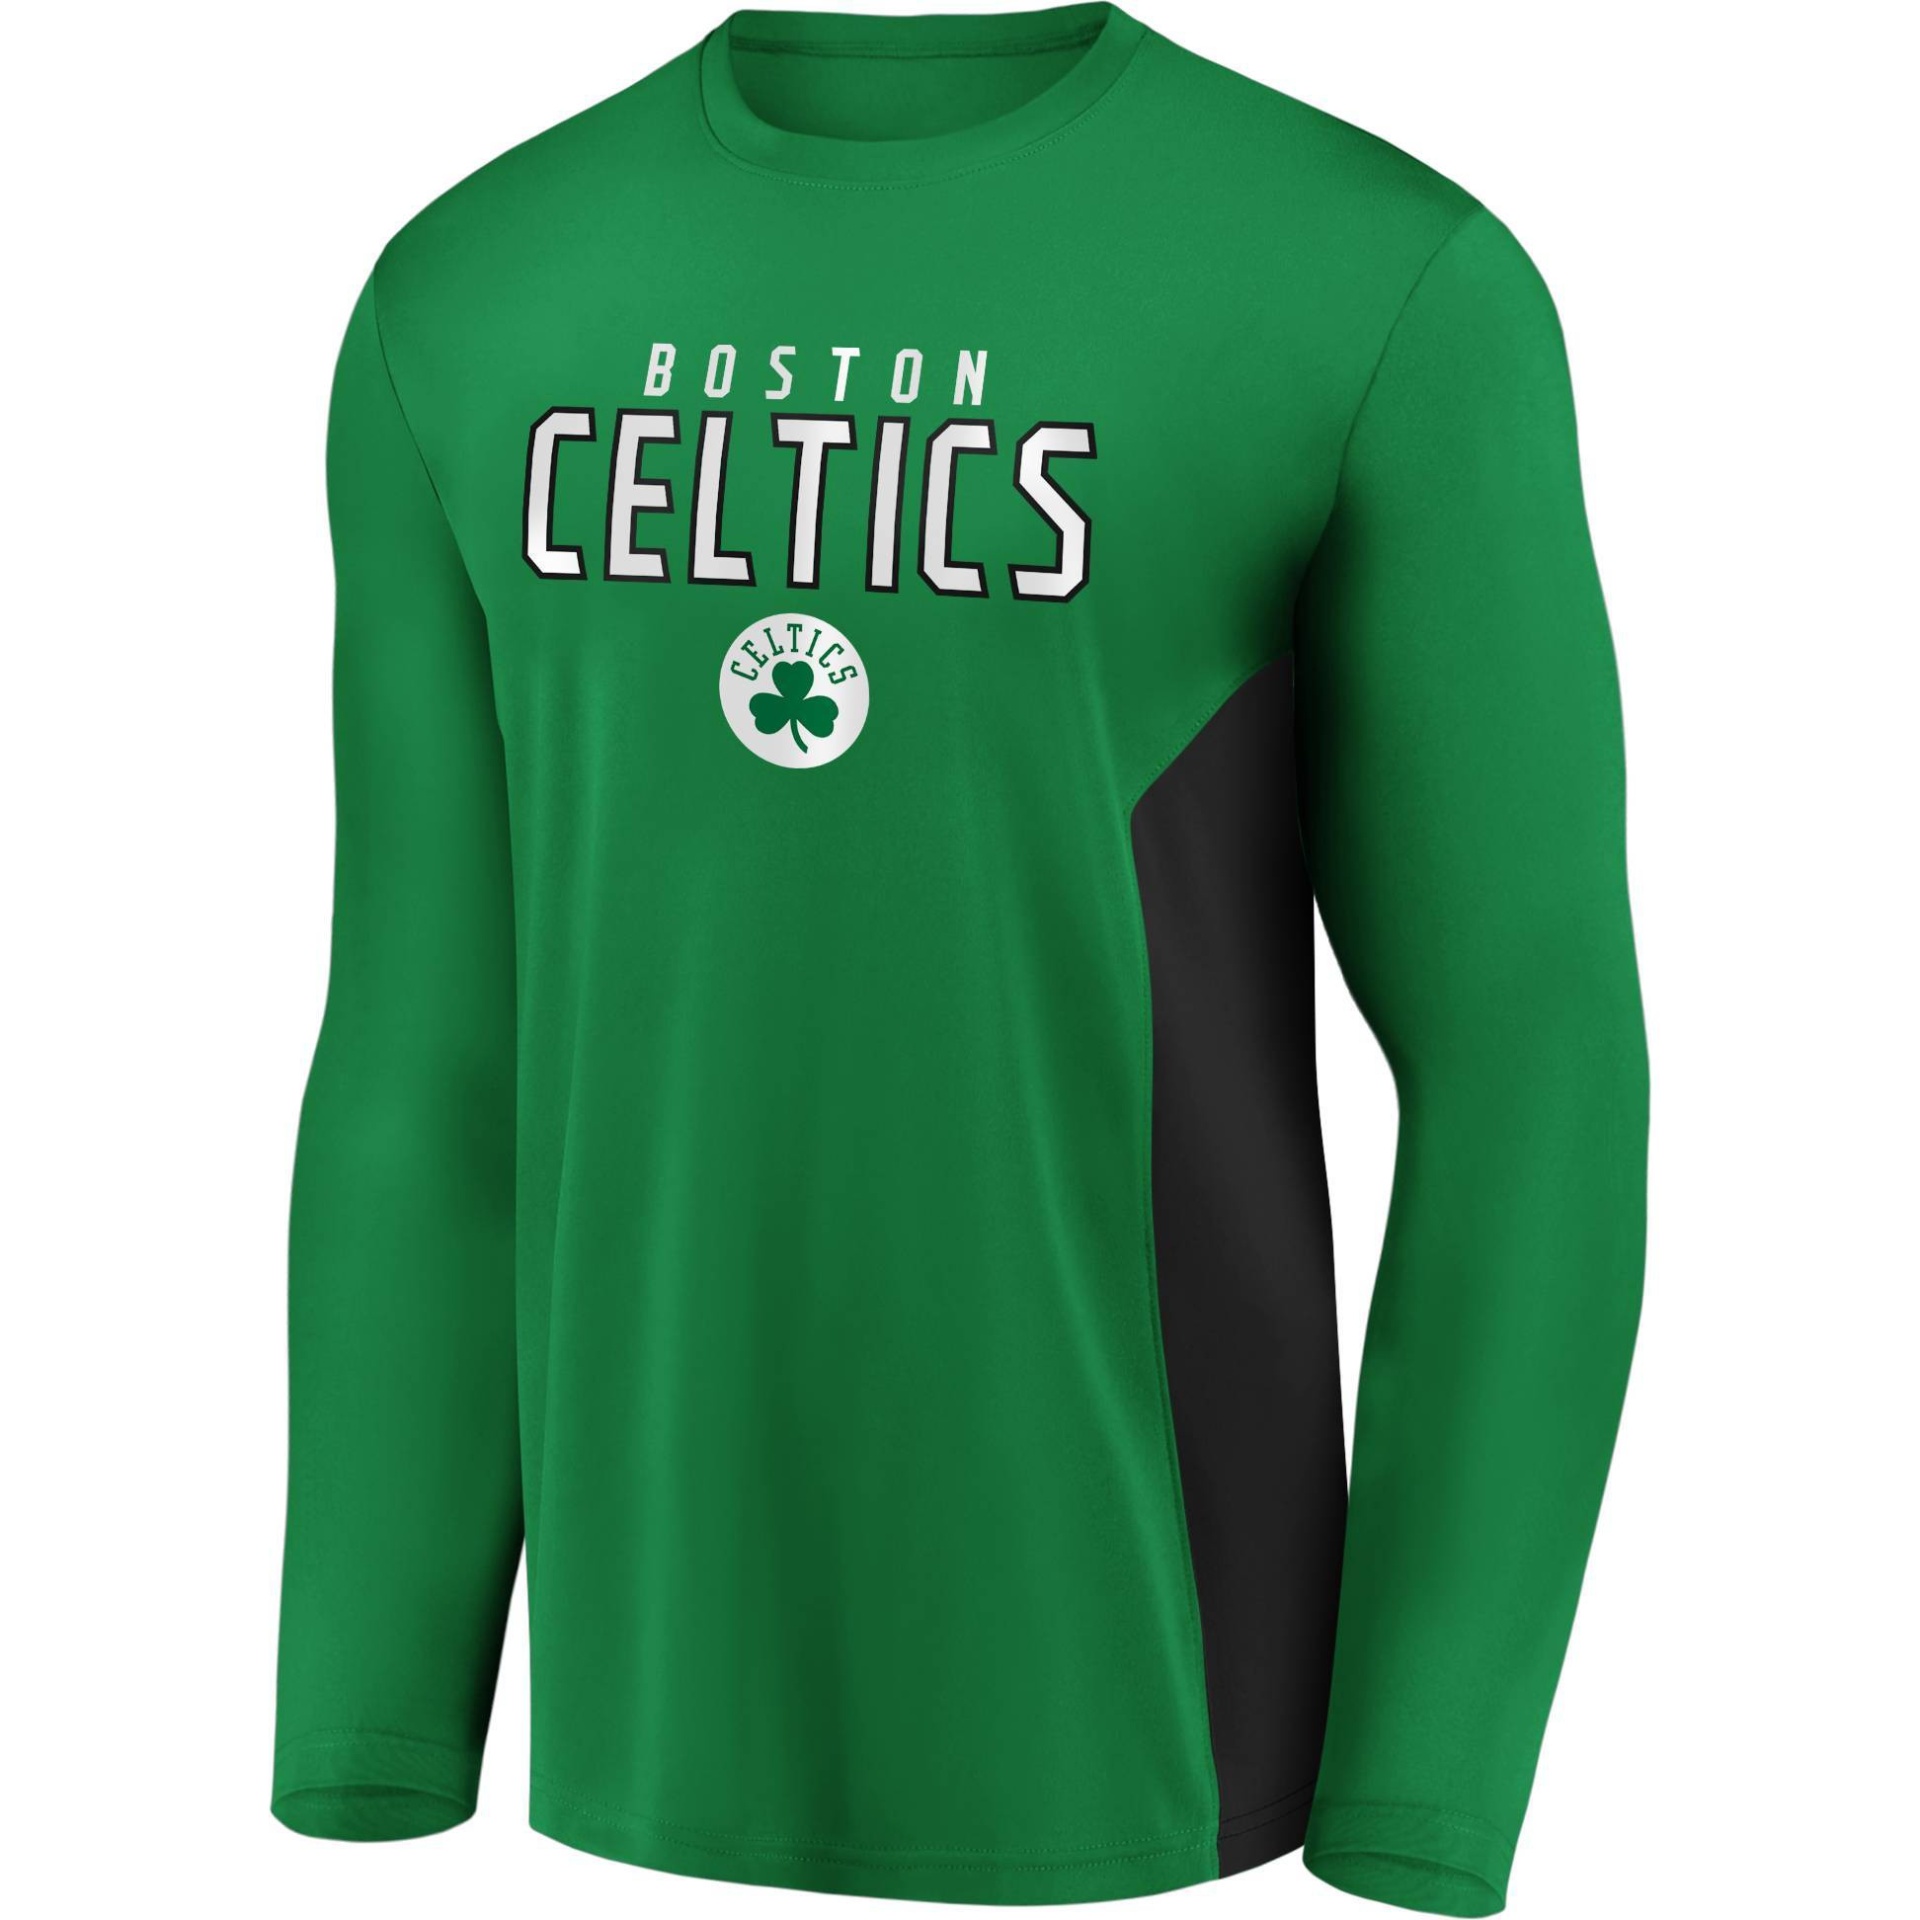 NBA Men's Shirt - Green - XXL